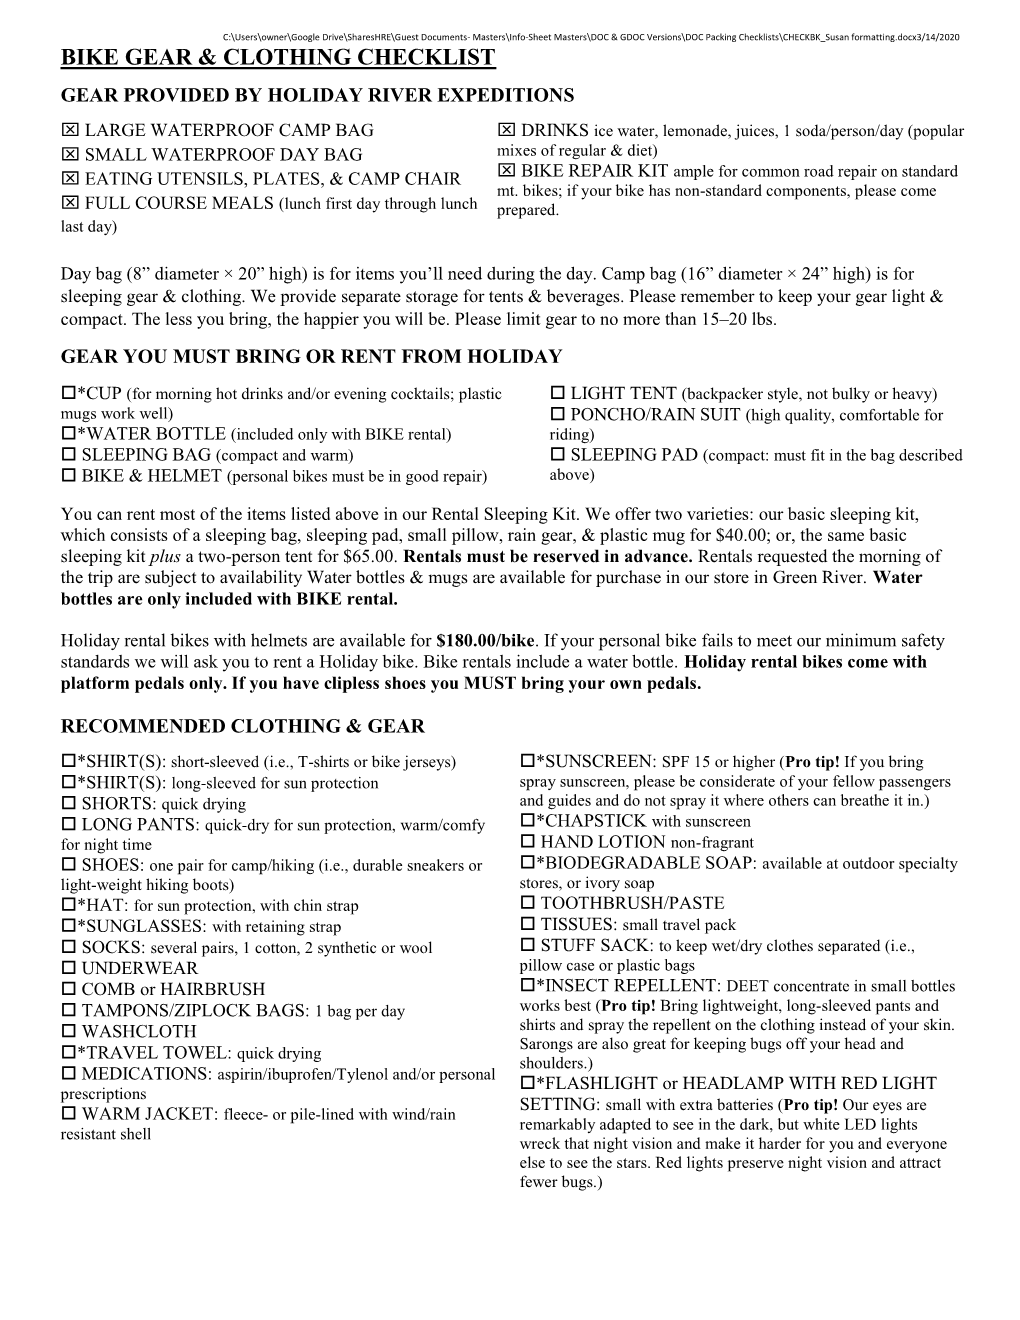 Bike Gear & Clothing Checklist